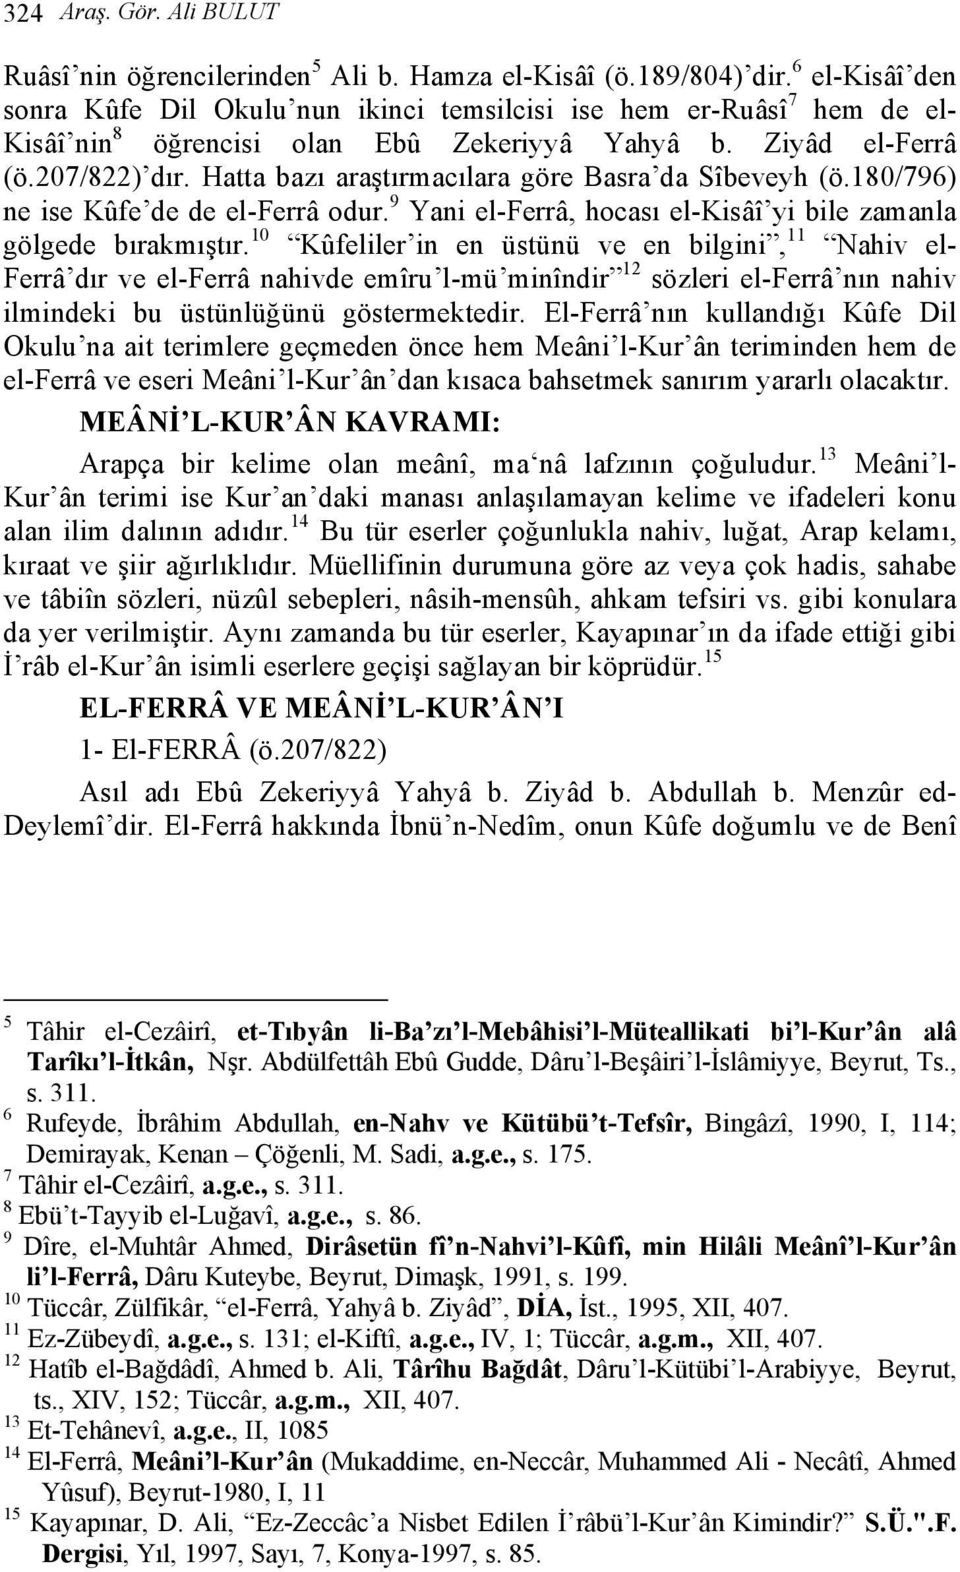 Hatta bazı araştırmacılara göre Basra da Sîbeveyh (ö.180/796) ne ise Kûfe de de el-ferrâ odur. 9 Yani el-ferrâ, hocası el-kisâî yi bile zamanla gölgede bırakmıştır.